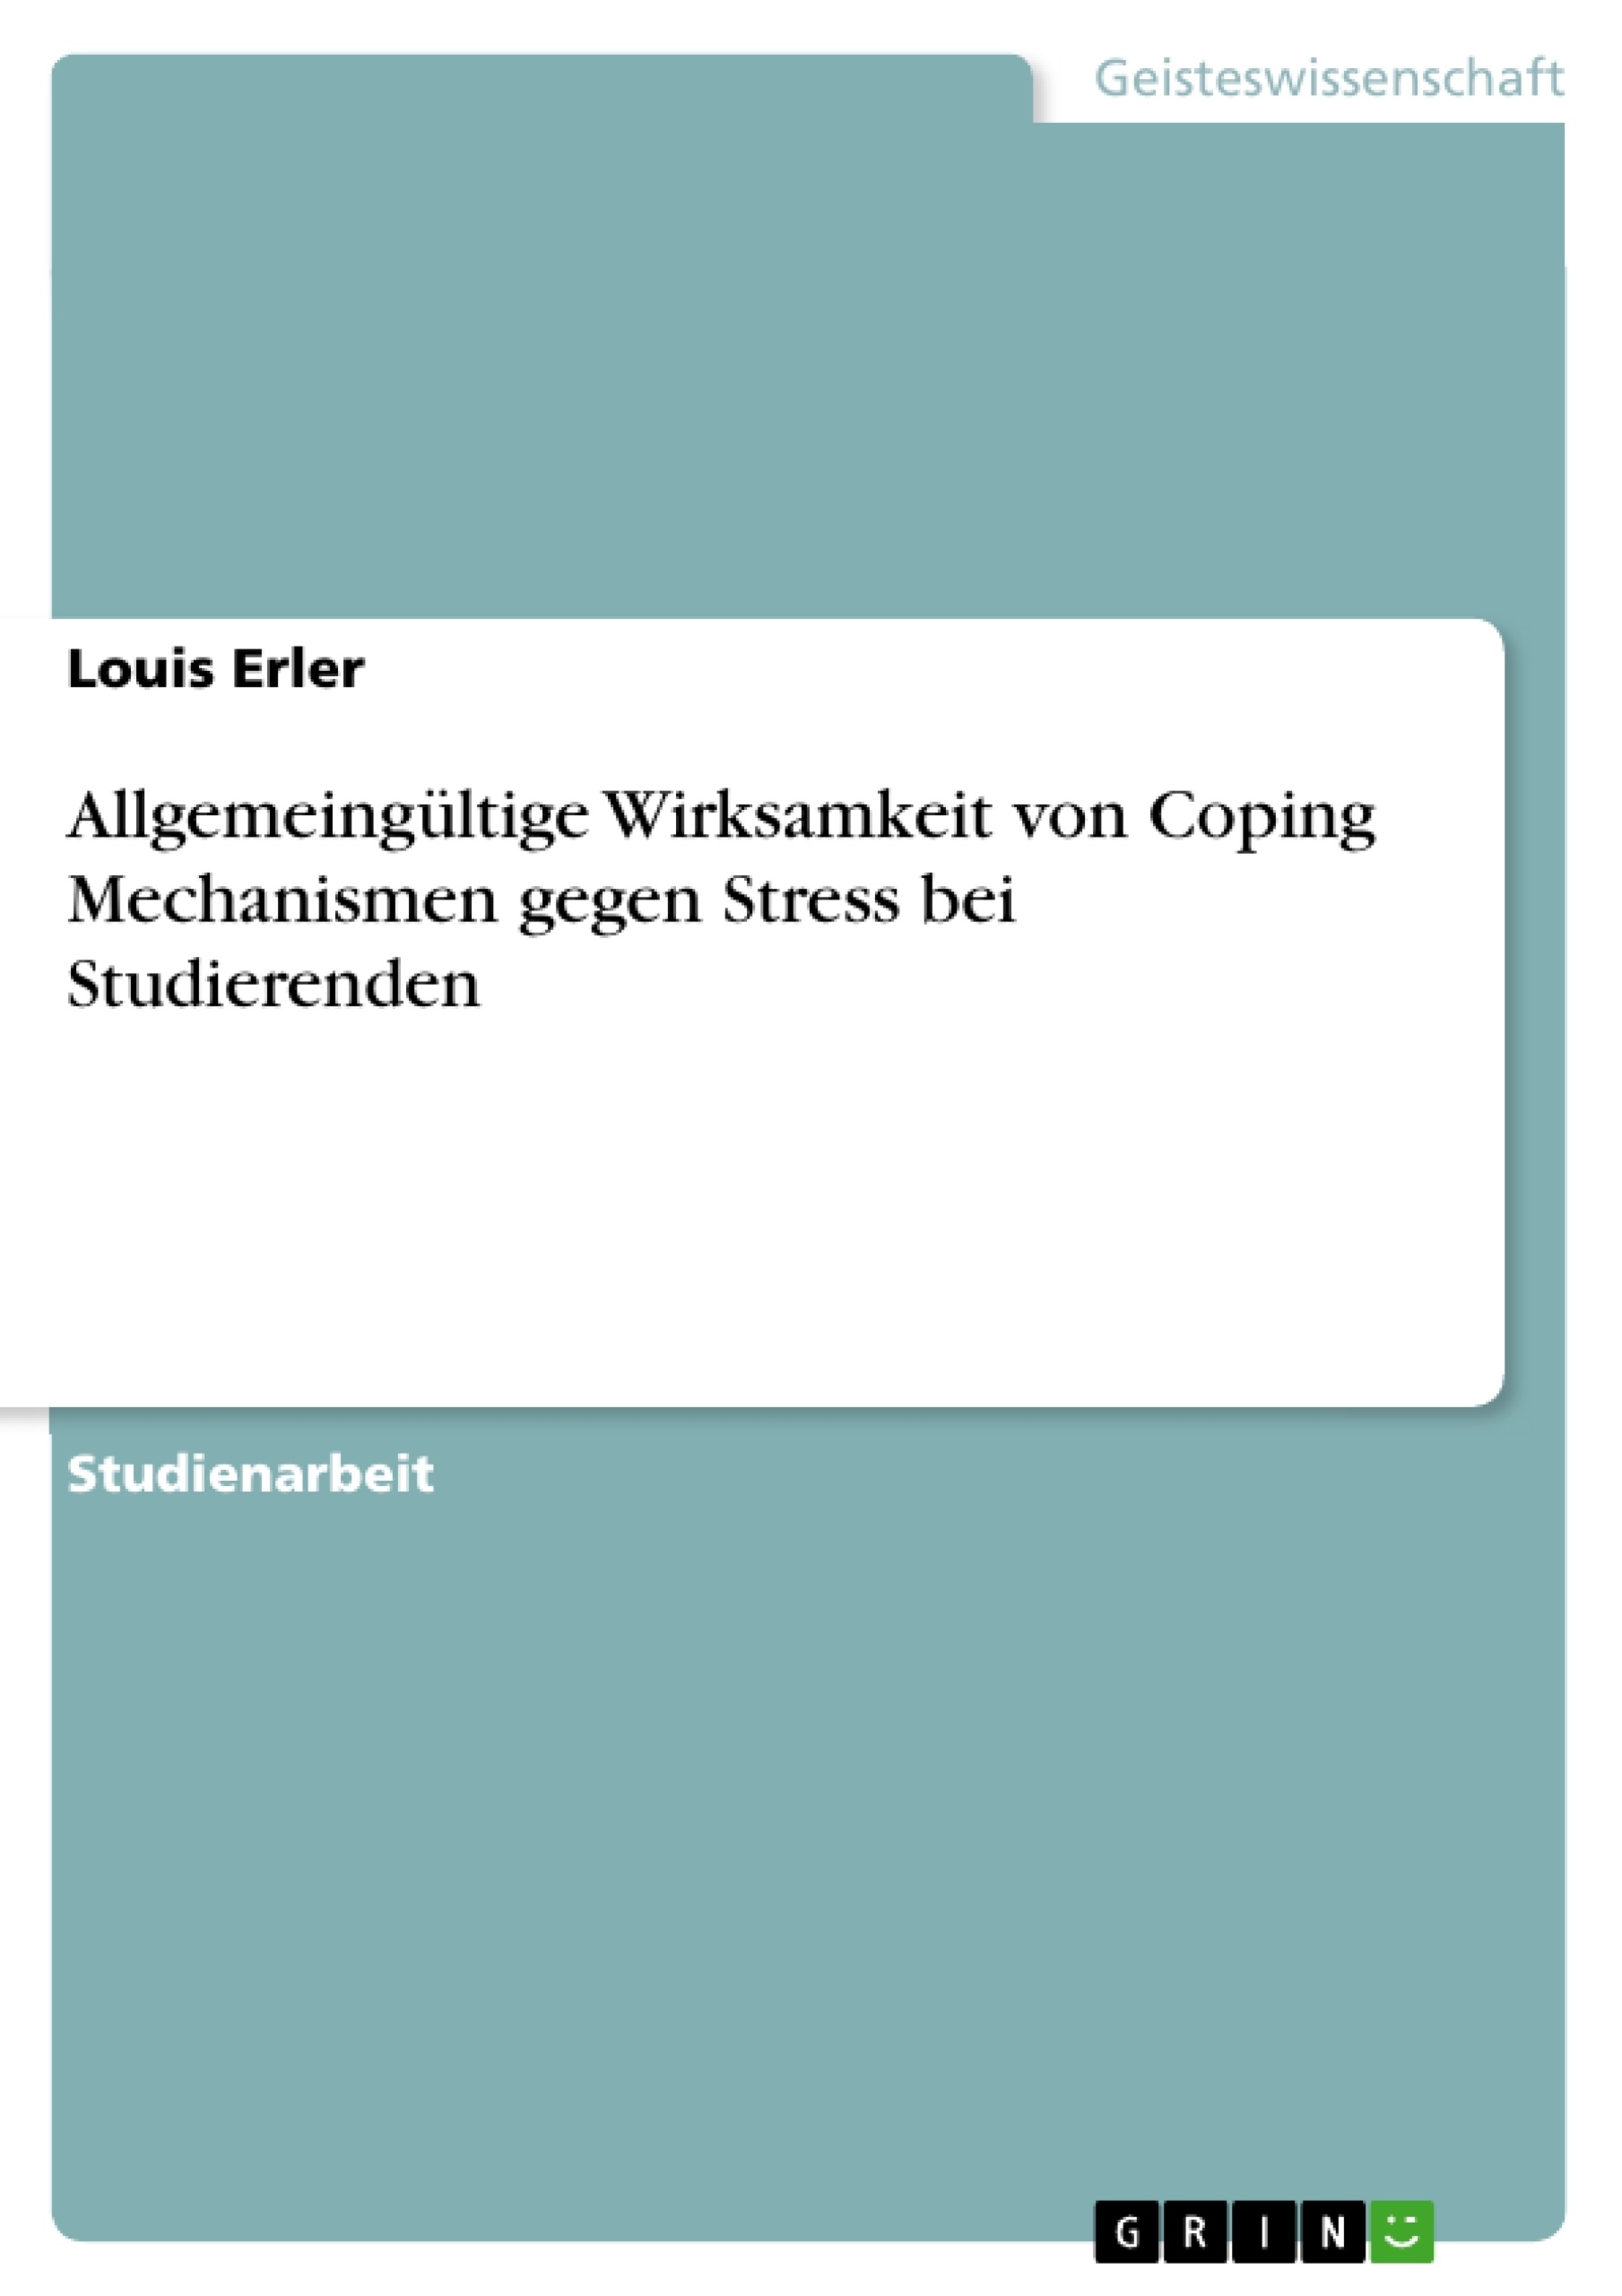 Título: Allgemeingültige Wirksamkeit von Coping Mechanismen gegen Stress bei Studierenden